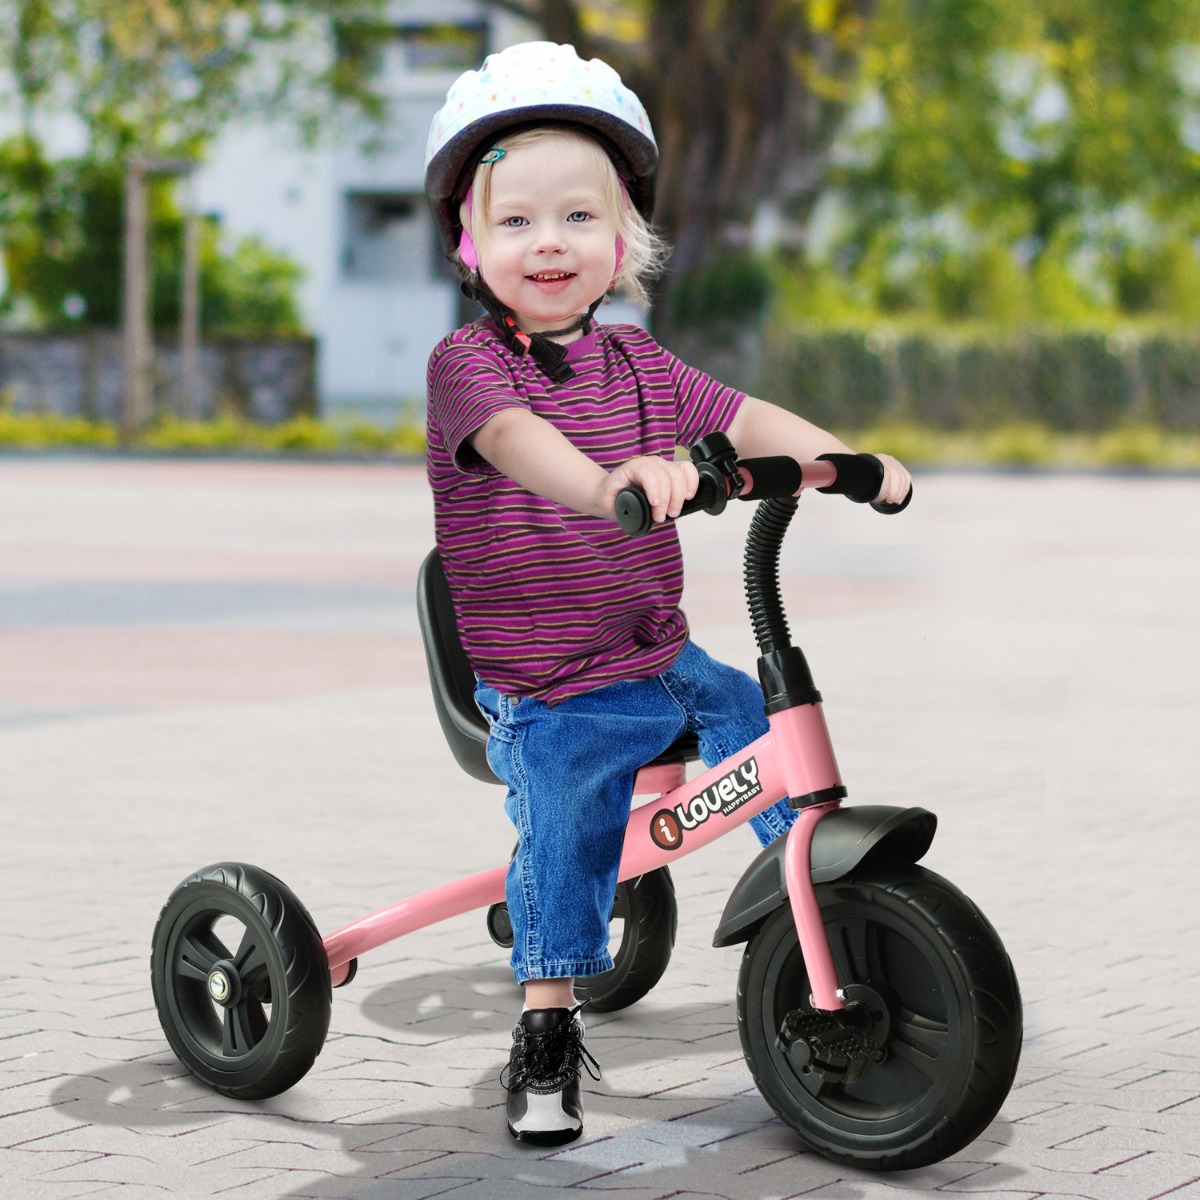 Triciclo Evolutivo Infantil Homcom 370-024pk